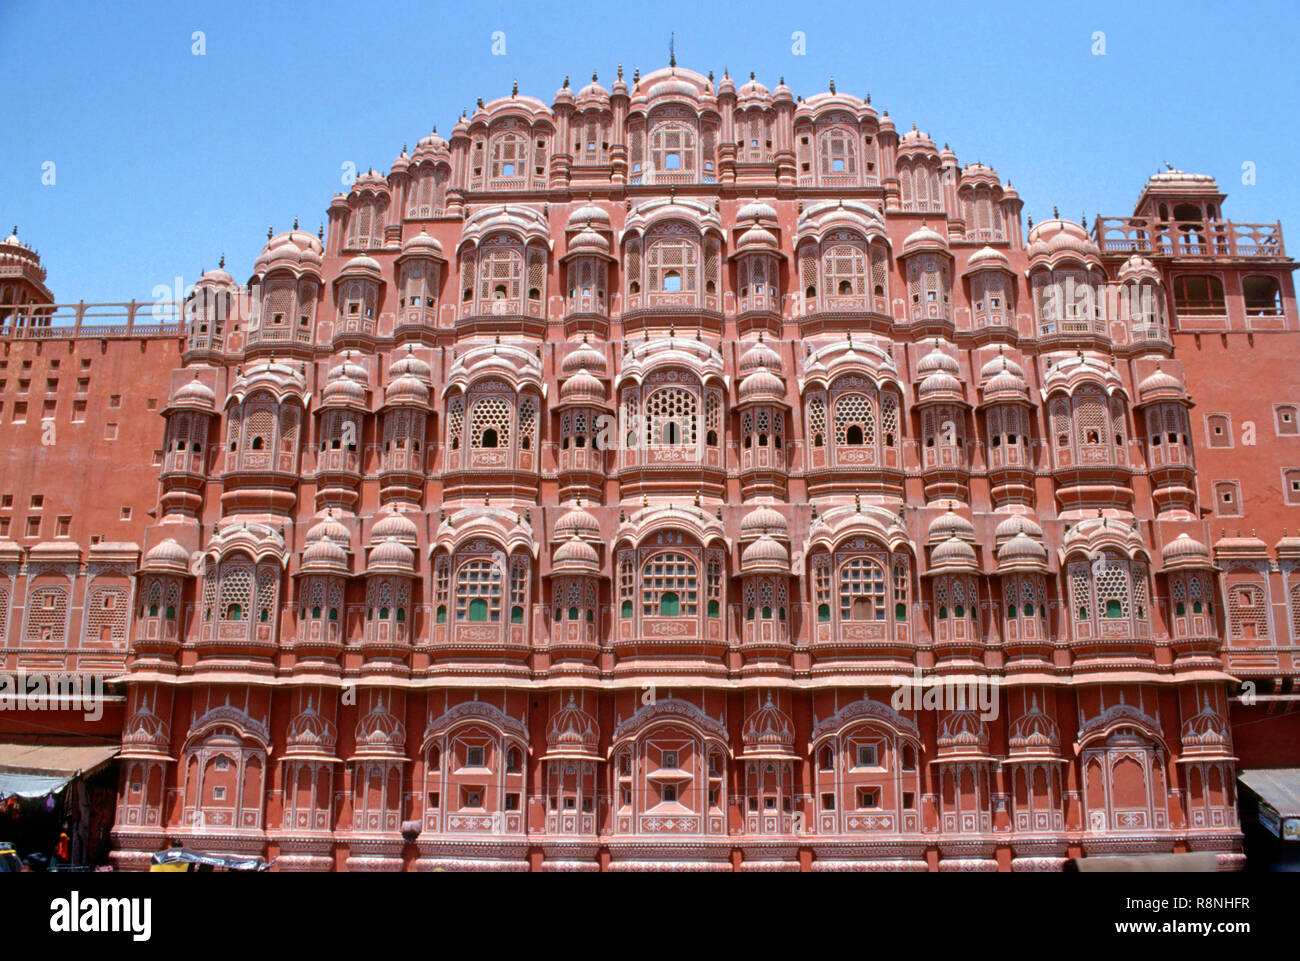 Hawa Mahal, Palace of winds, Jaipur, rajasthan, india Stock Photo